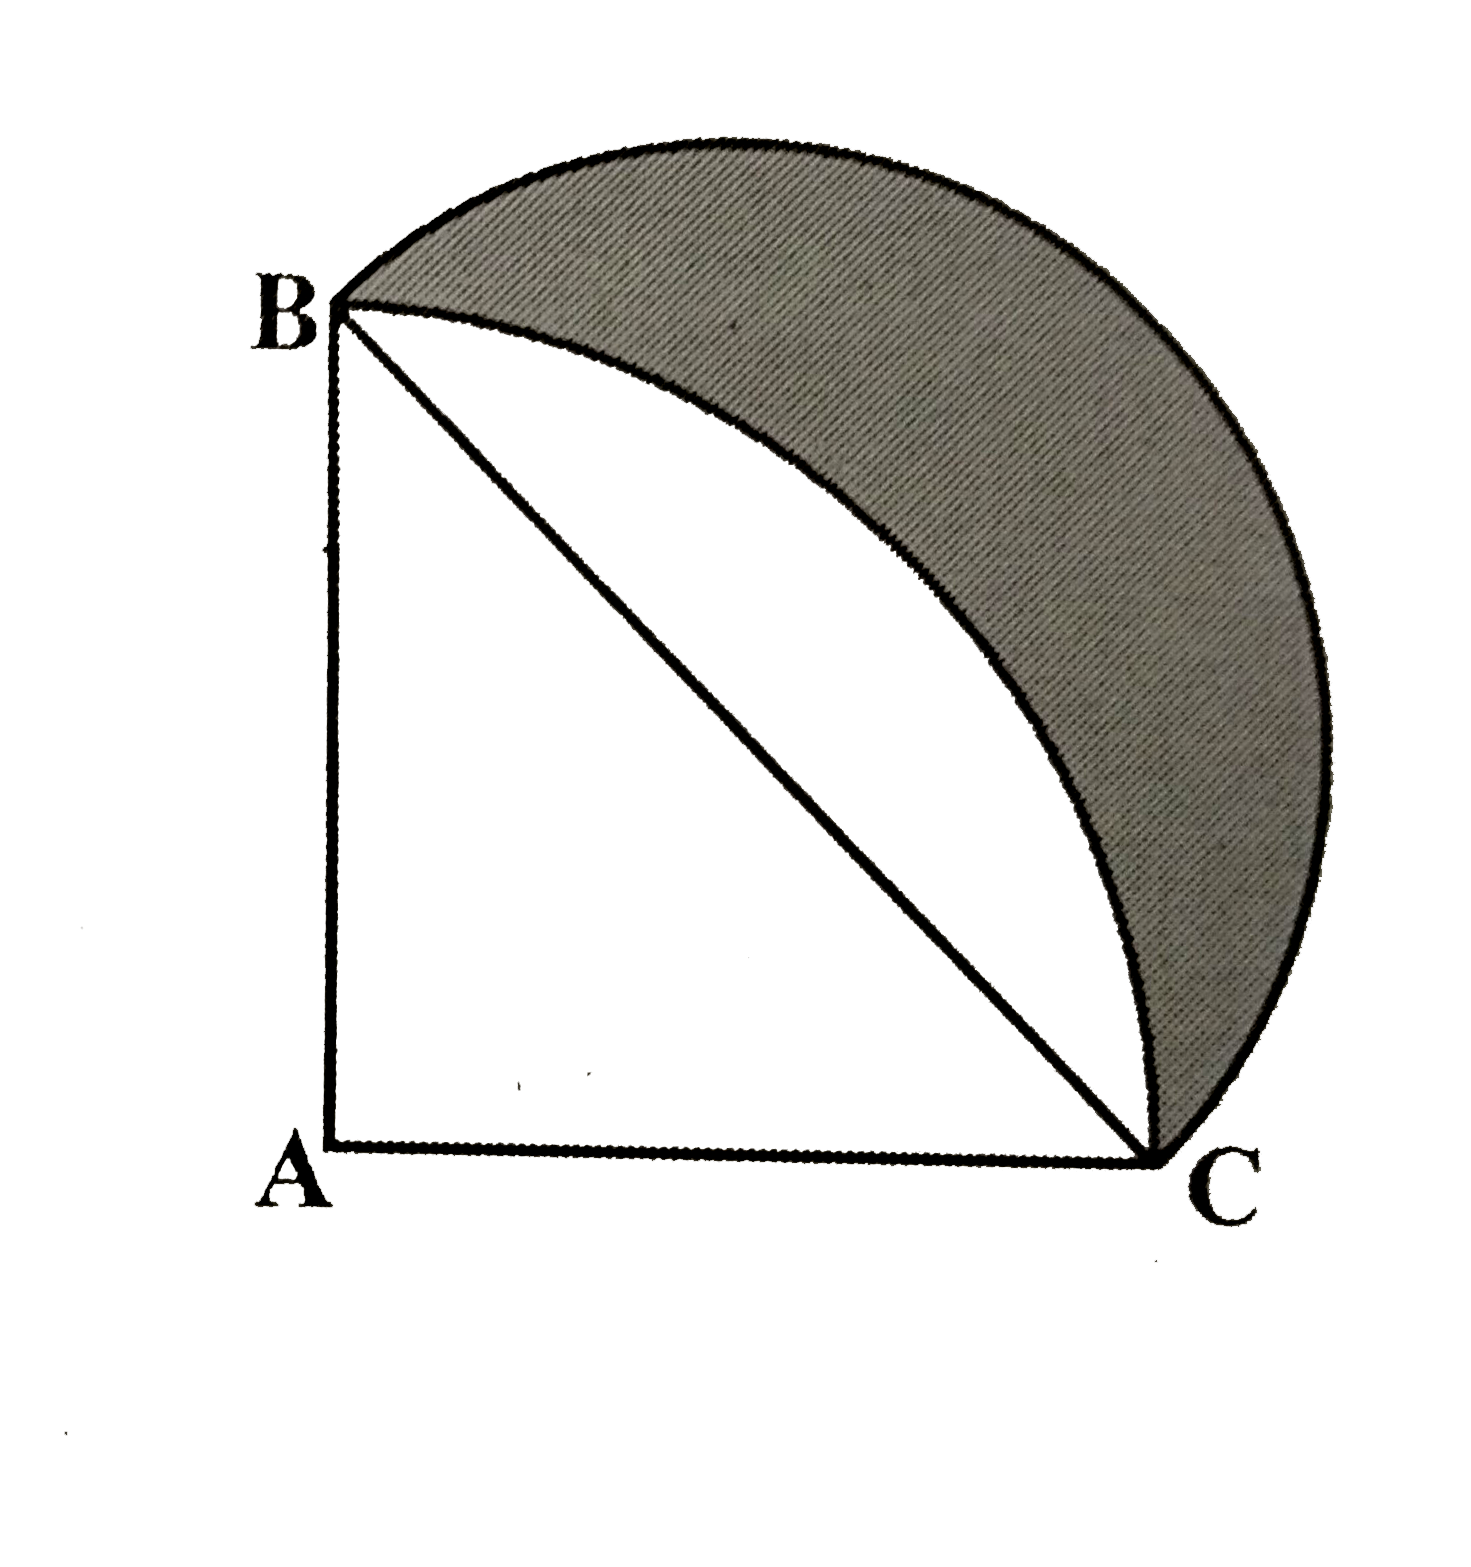 आकृति में ABC त्रिज्या 14 सेमी वाले एक वृत्त का चतुर्थांश है तथा BC को व्यास मान कर एक अर्धवृत्त खींचा गया है। छायांकित भाग का क्षेत्रफल ज्ञात कीजिए।